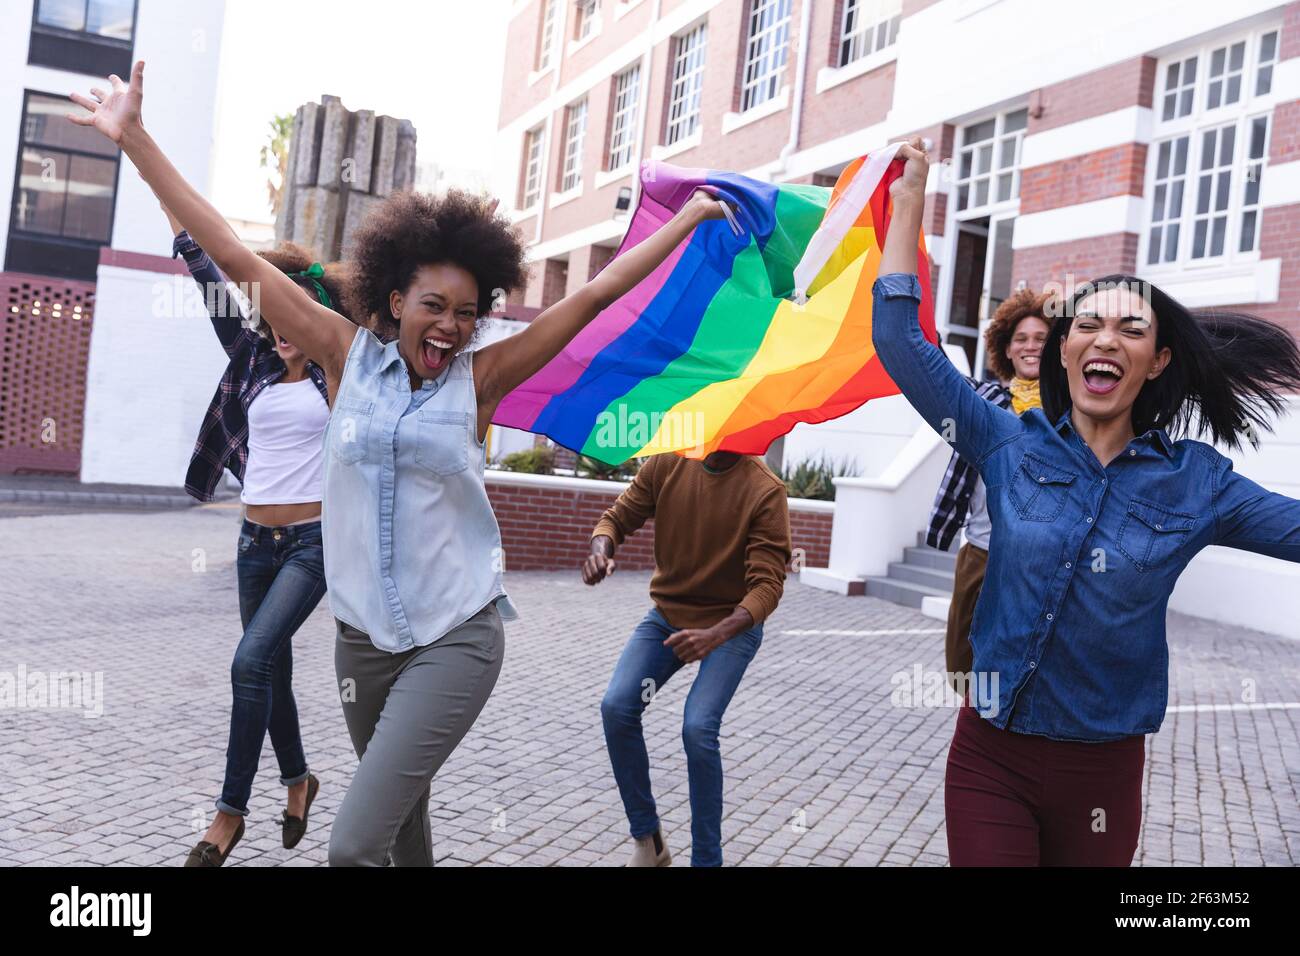 Verschiedene männliche und weibliche Demonstranten hielten am märz Regenbogenfahne in der Hand und jubelten mit erhobenen Waffen Stockfoto